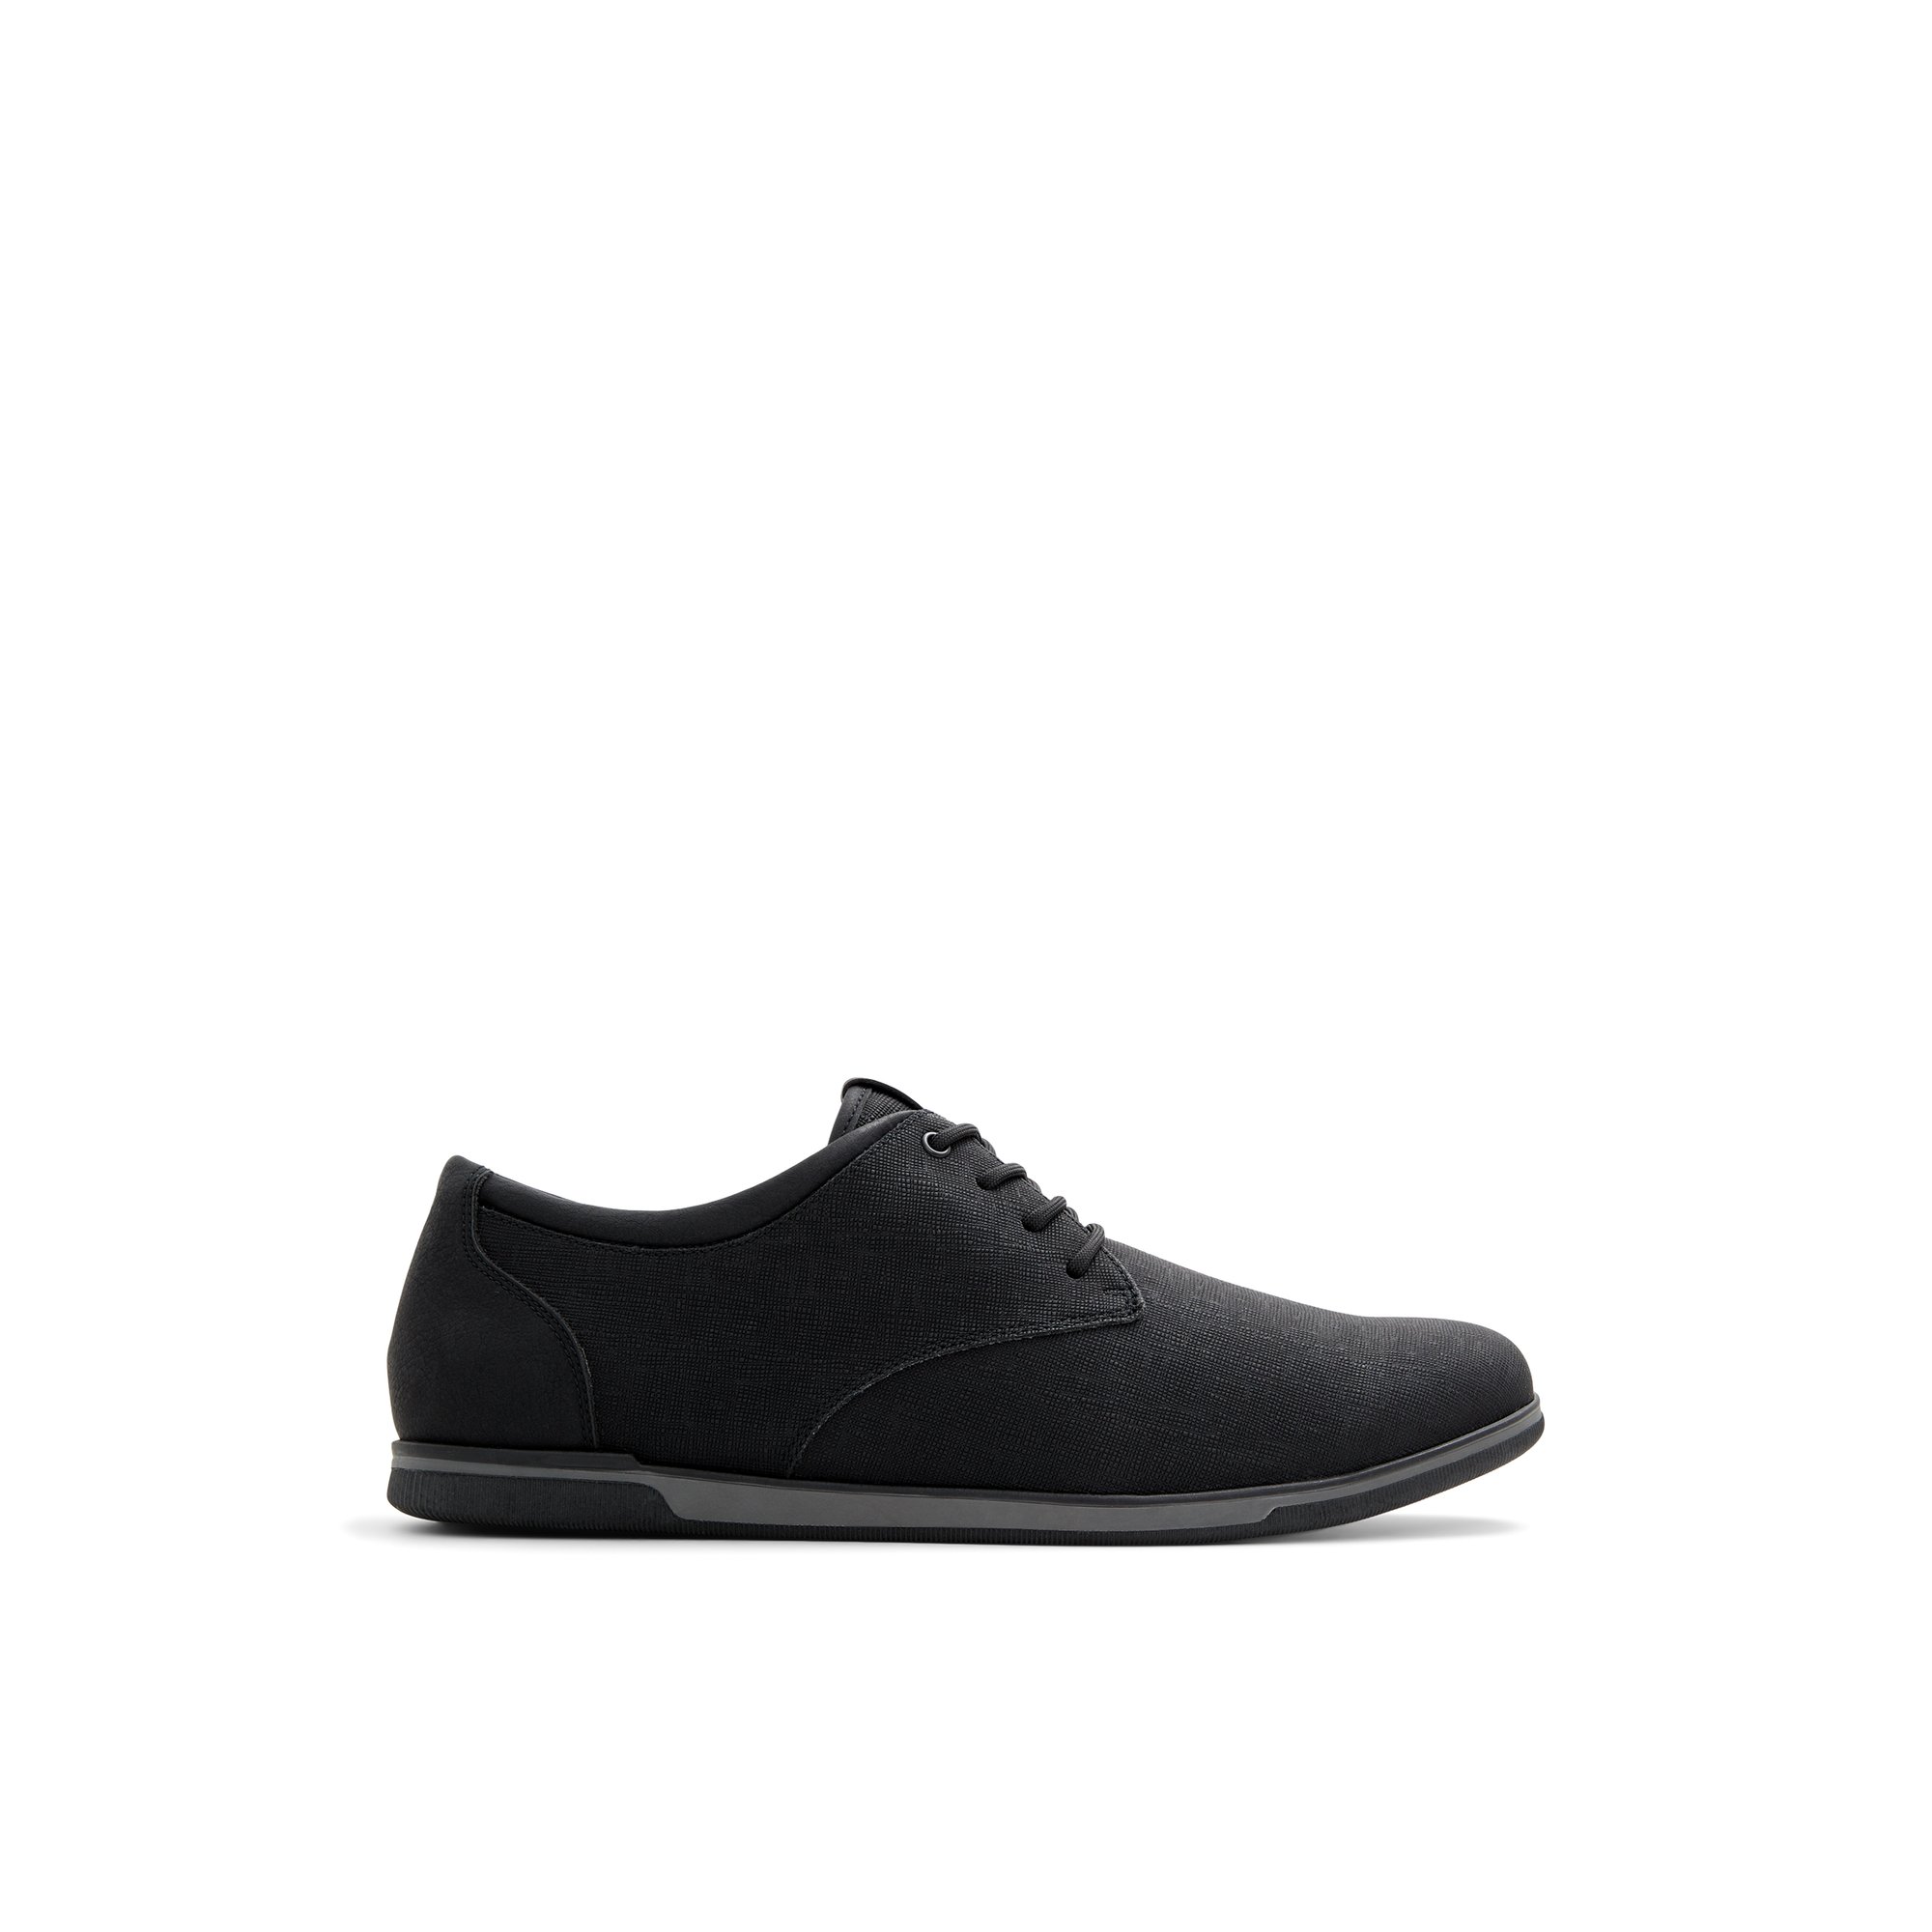 ALDO Heron - Men's Sneakers Low Top - Black